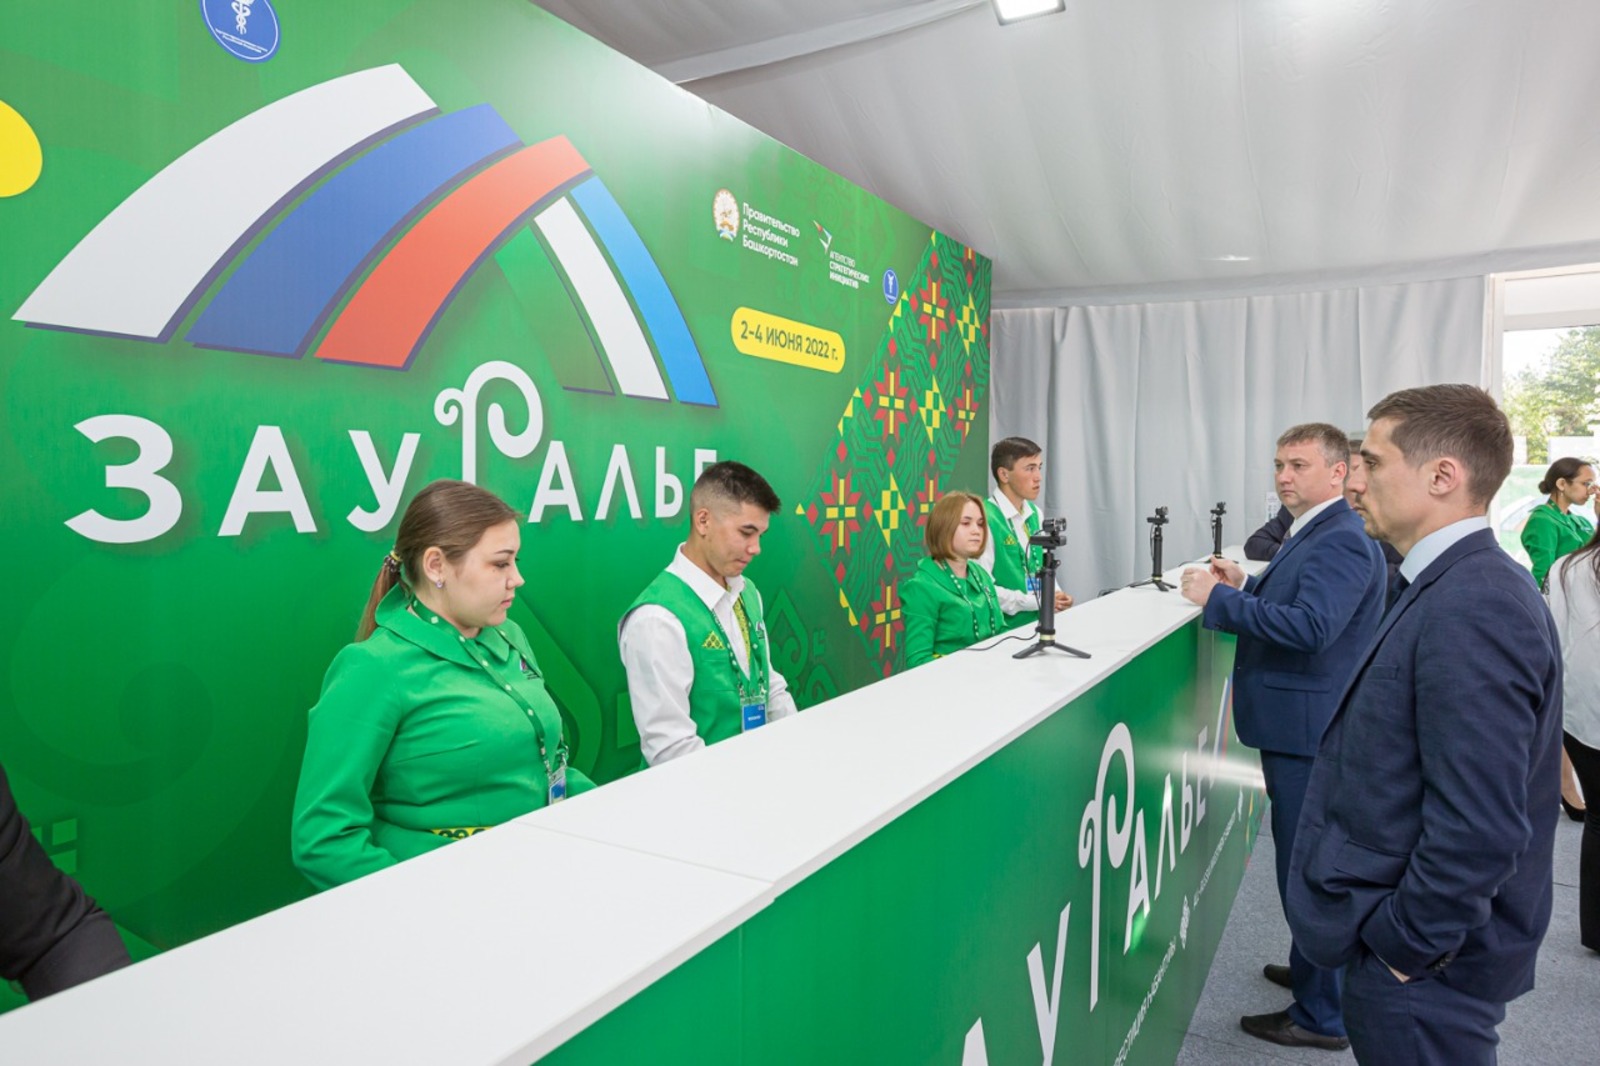 Порядка 200 волонтеров Башкортостана задействовано в проведении инвестиционного сабантуя «Зауралье – 2022»